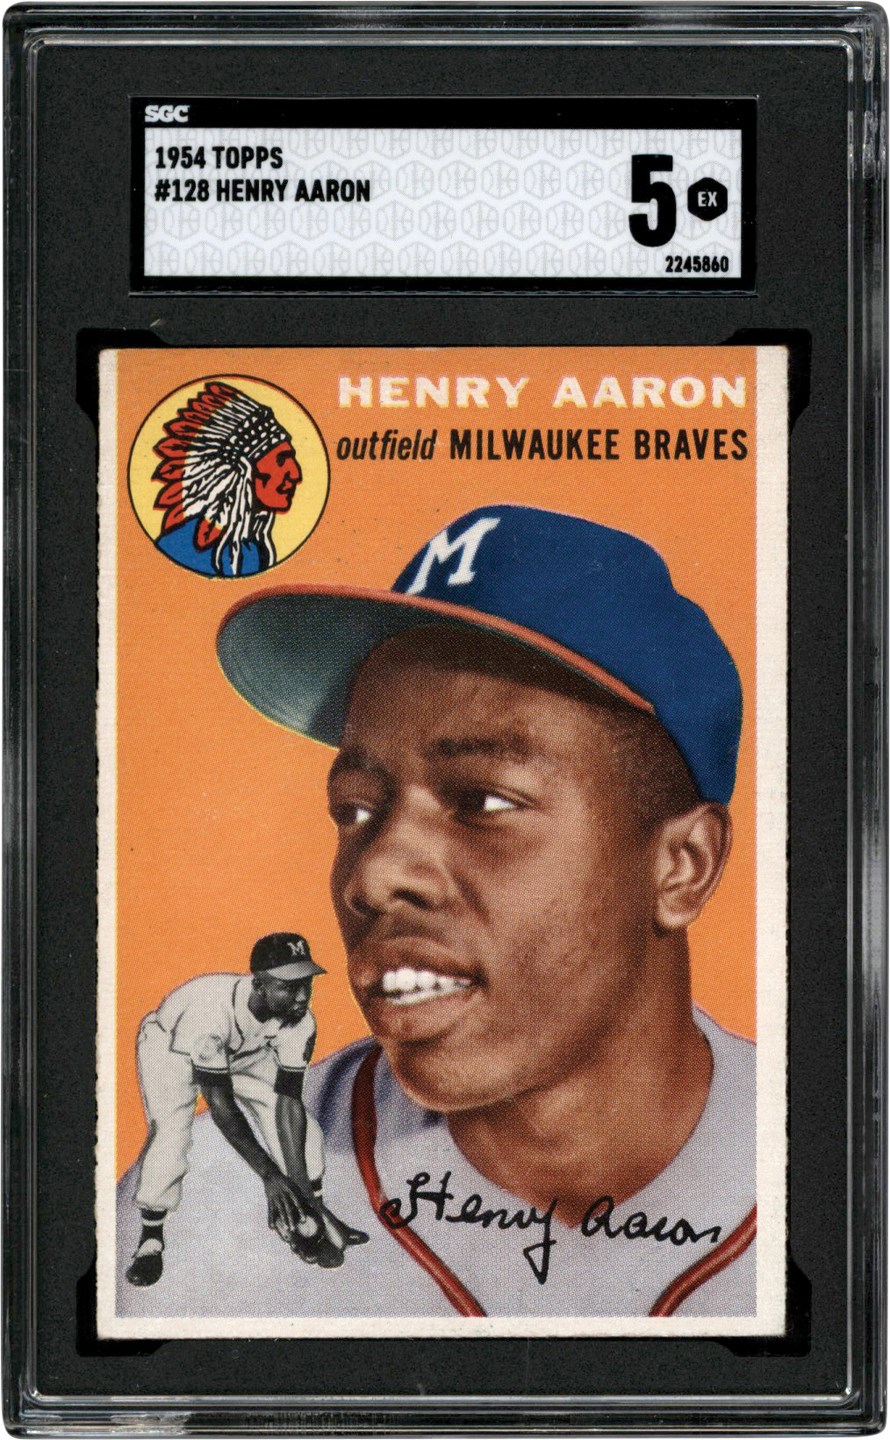 1954 Topps #128 Hank Aaron Rookie Card SGC EX 5